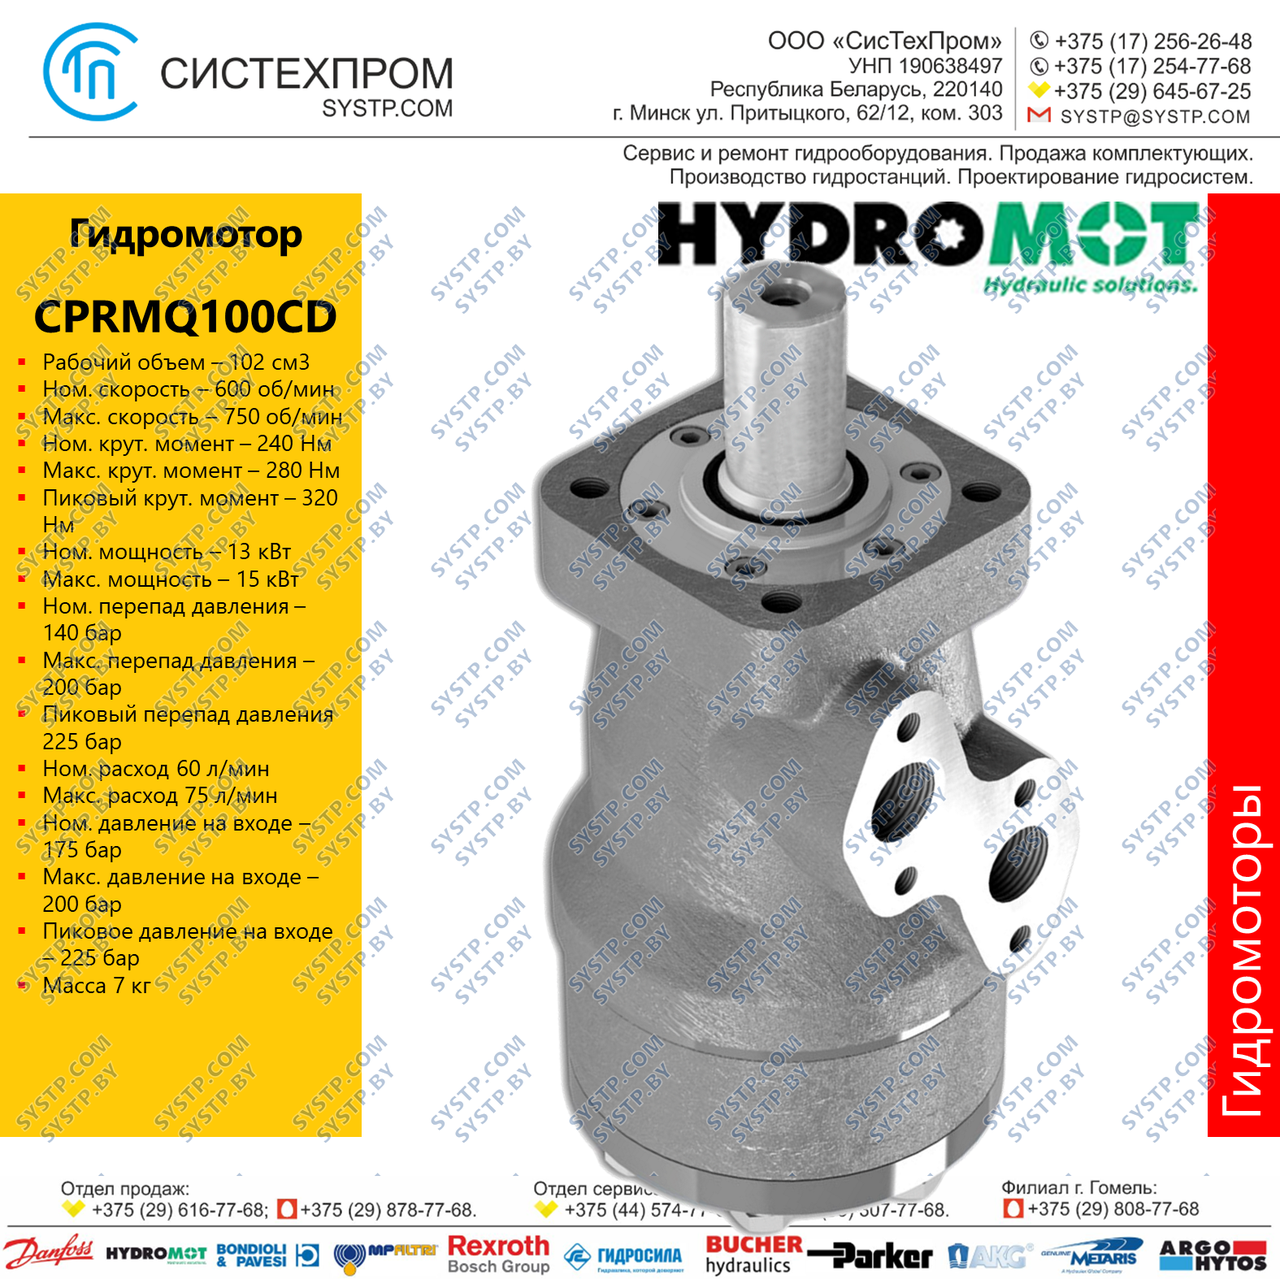 Гидромотор CPRMQ 100CD, фото 1